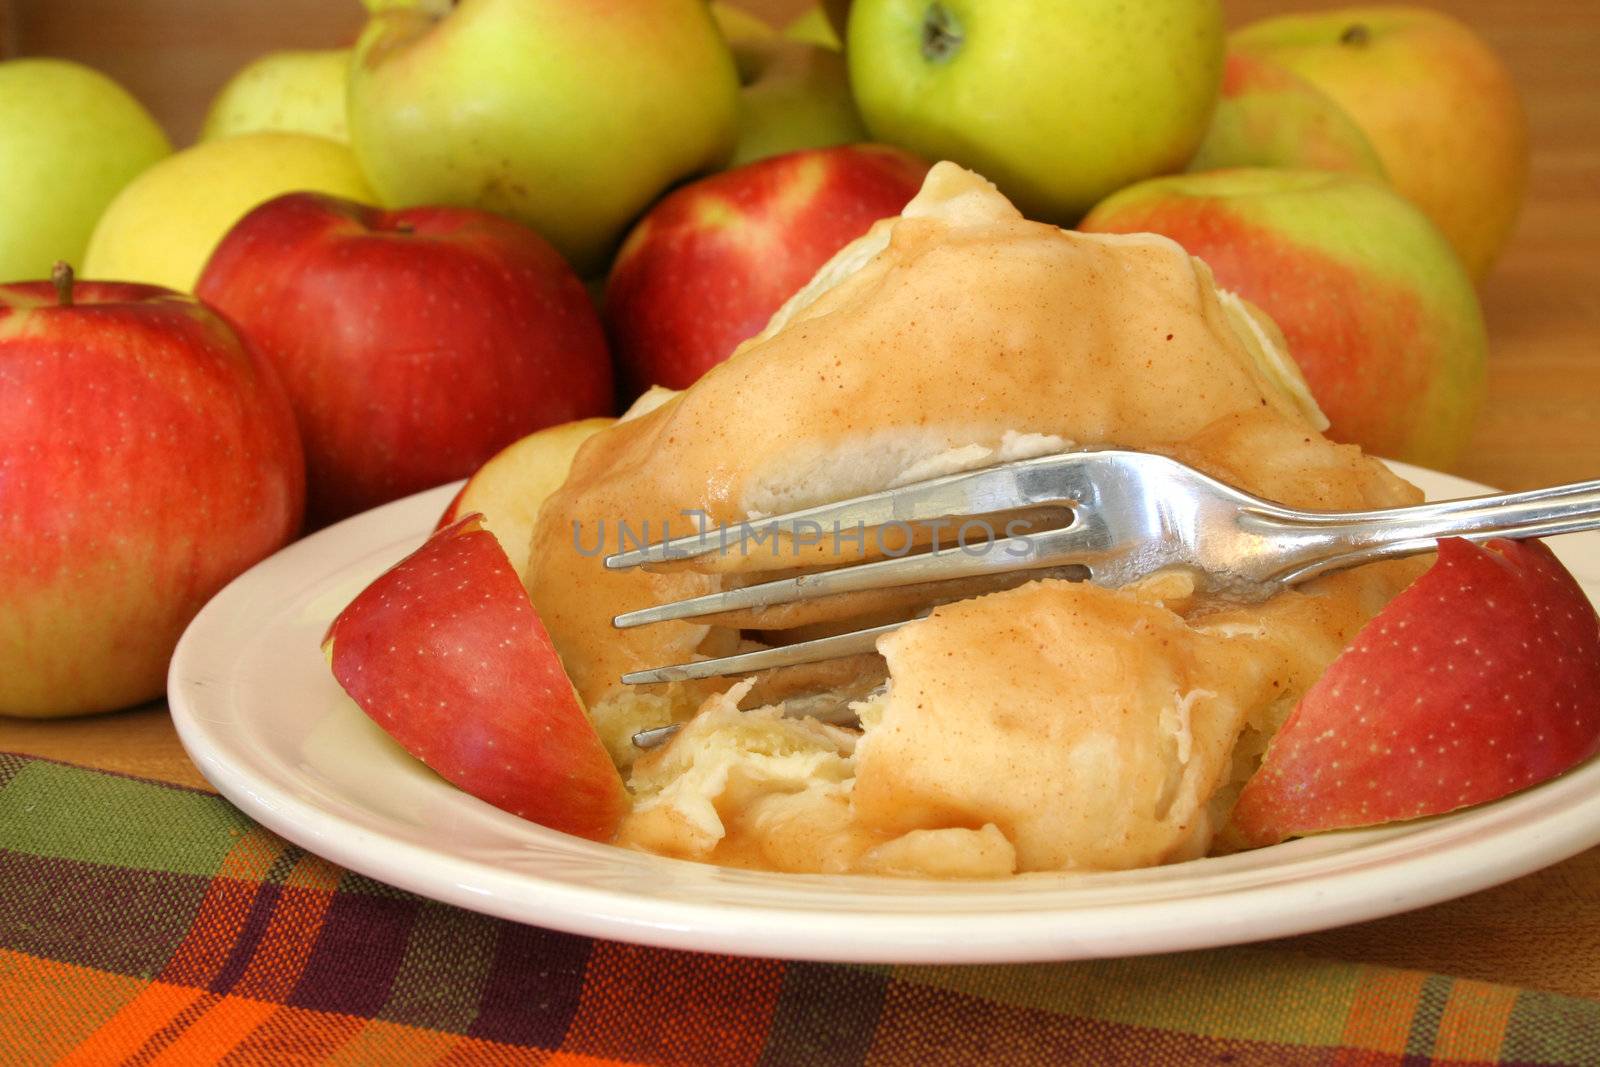 Apple Dumpling by thephotoguy